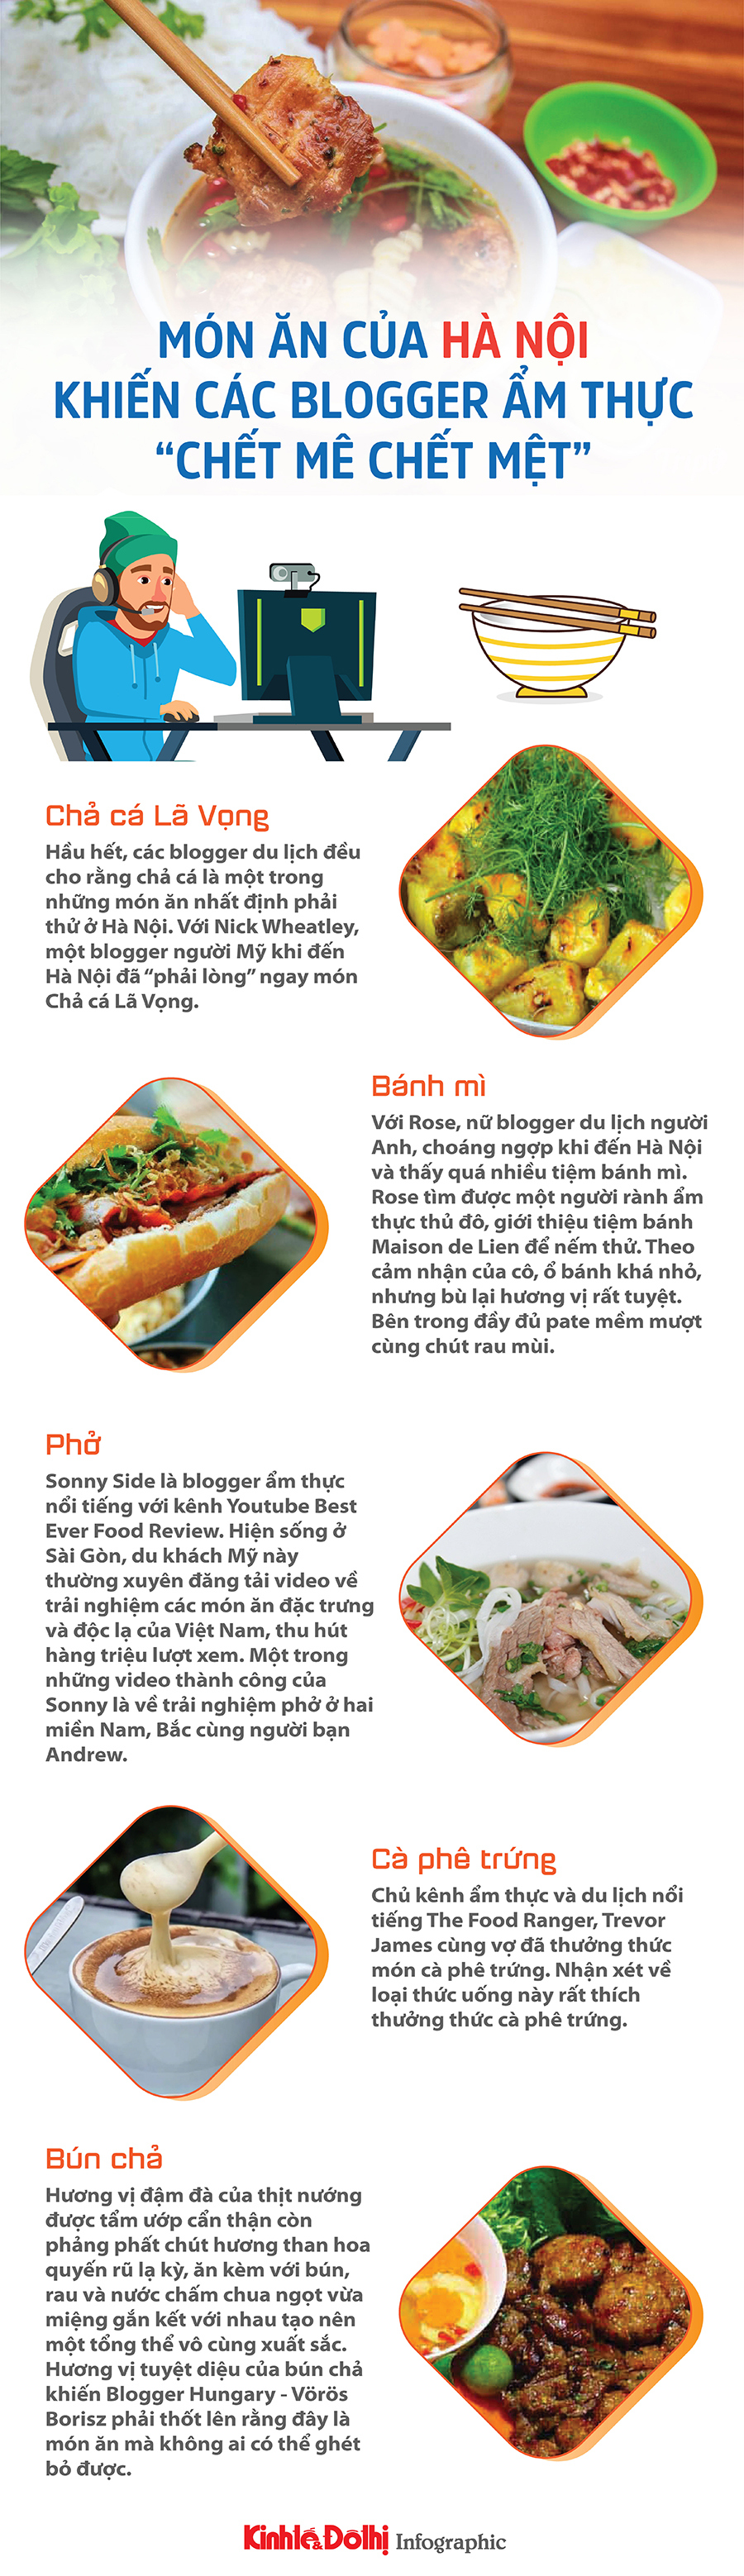 Top 5 món ăn của Hà Nội khiến các blogger ẩm thực “chết mê chết mệt” - Ảnh 1.